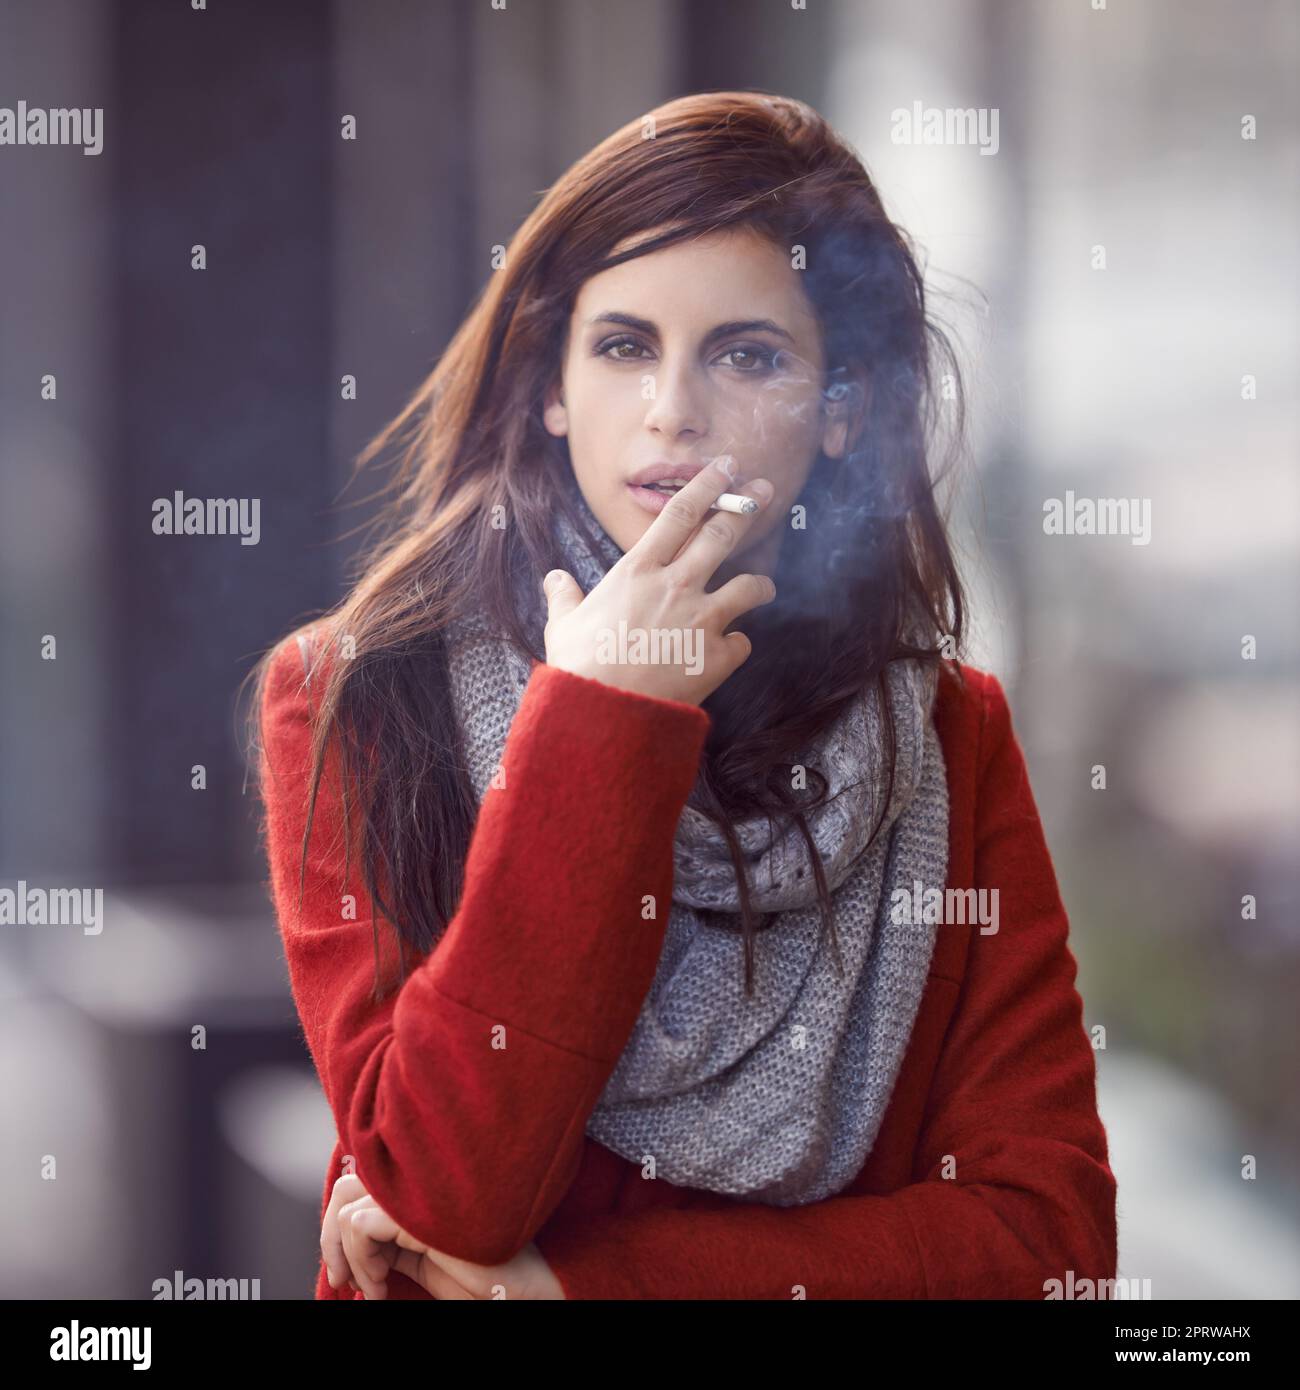 Quando la voglia chiama. Ritratto di una giovane donna bella e alla moda che fuma una sigaretta in un ambiente urbano. Foto Stock